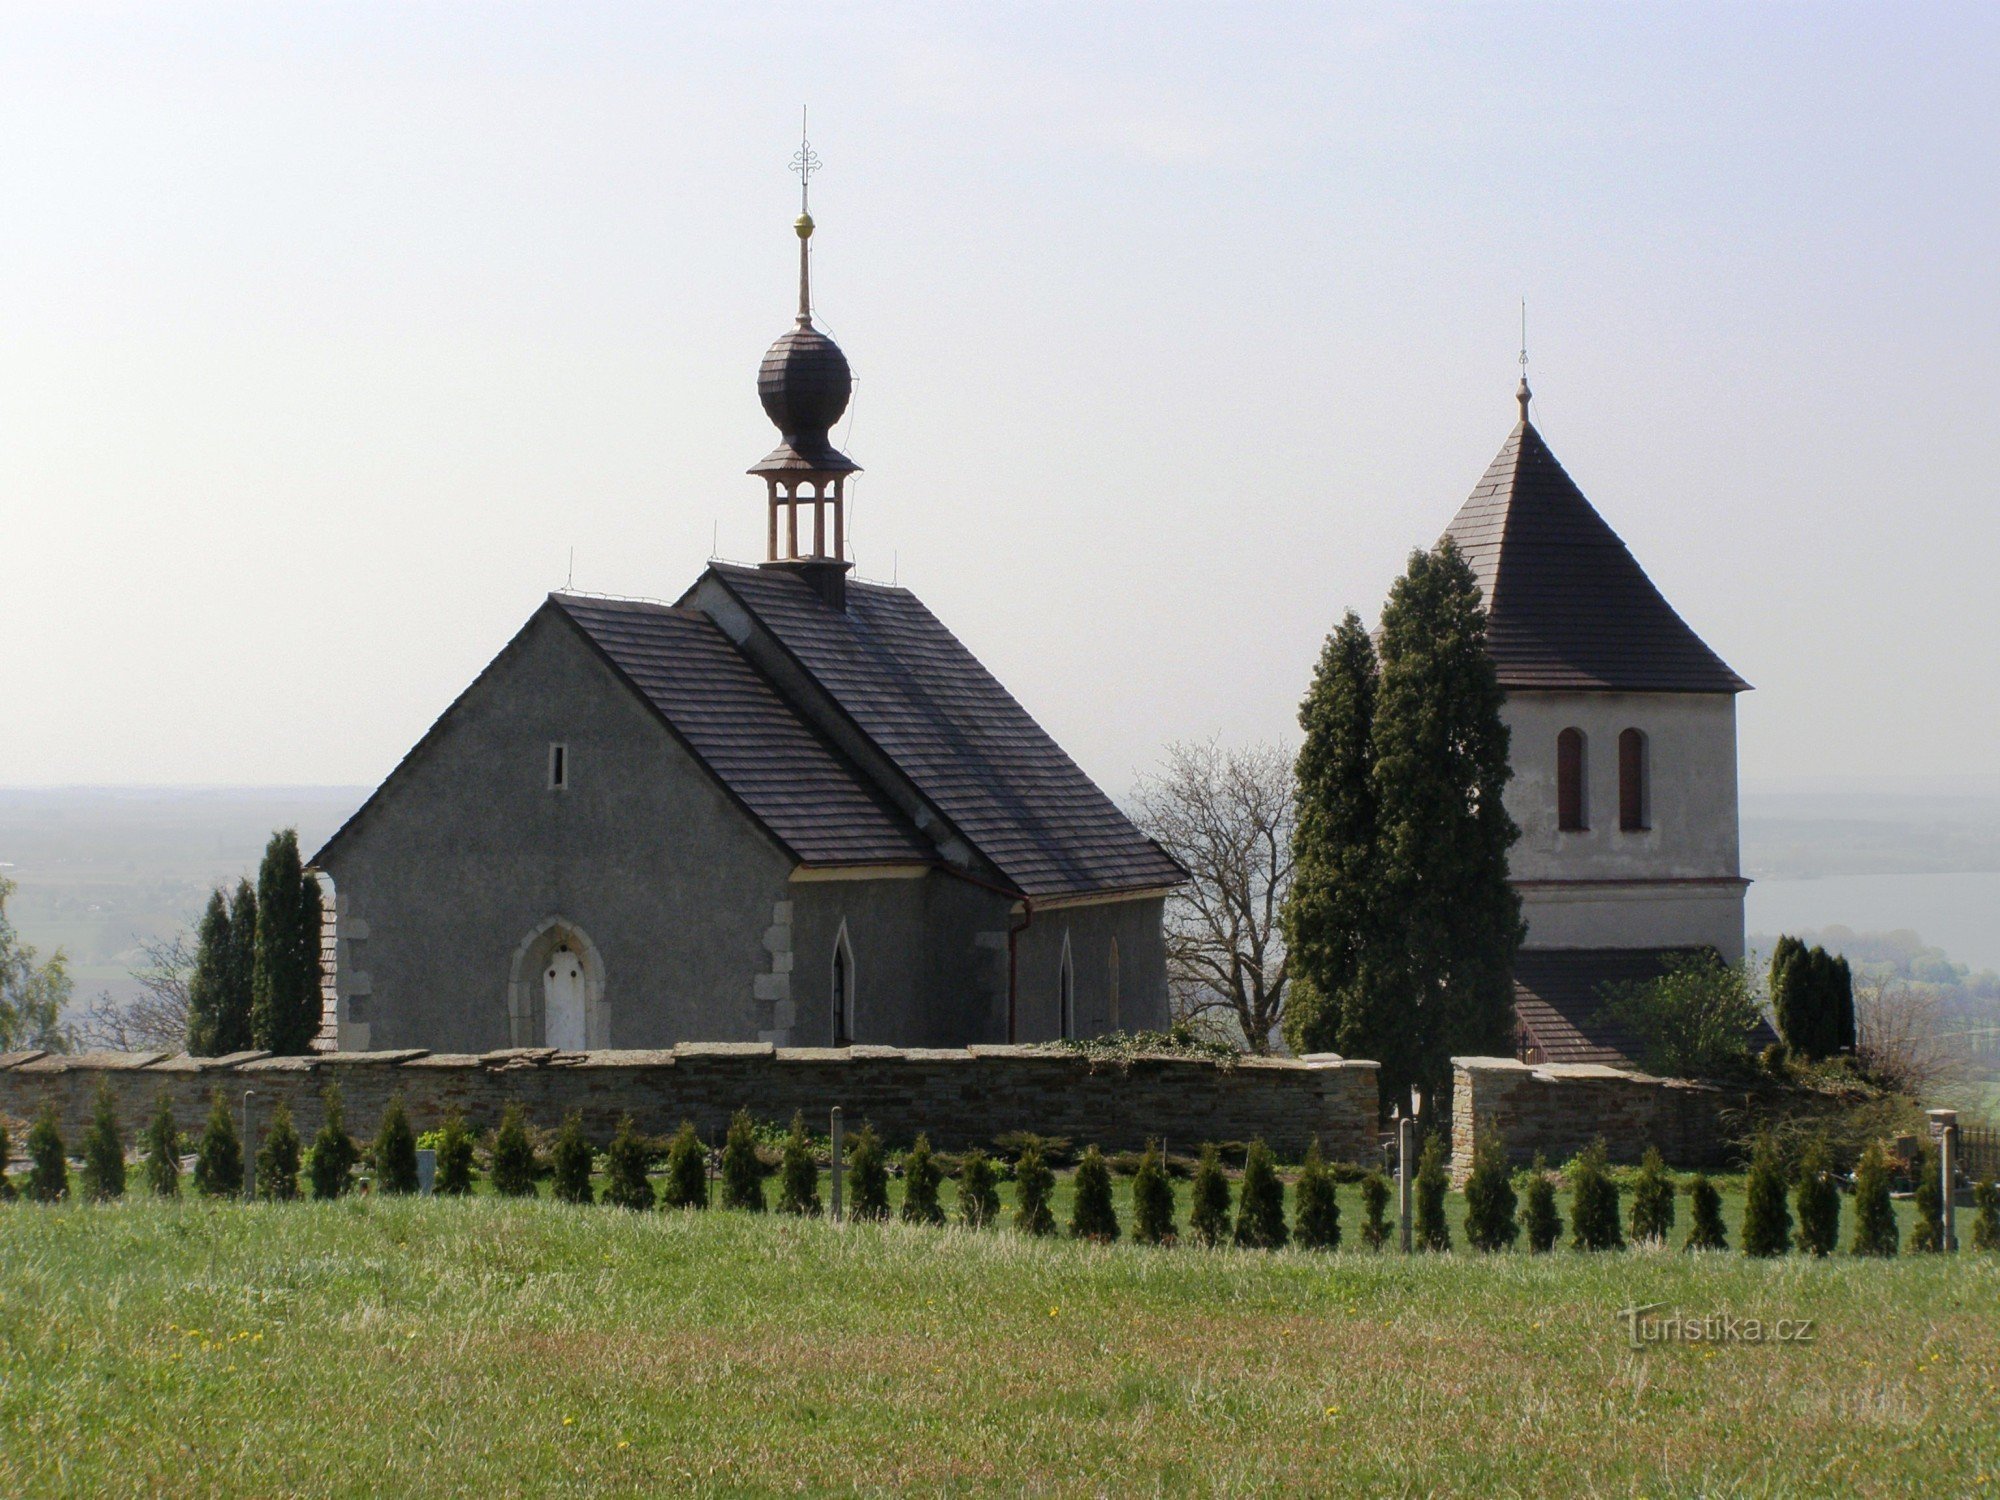 Václavice - kirken St. Wenceslas med klokketårnet